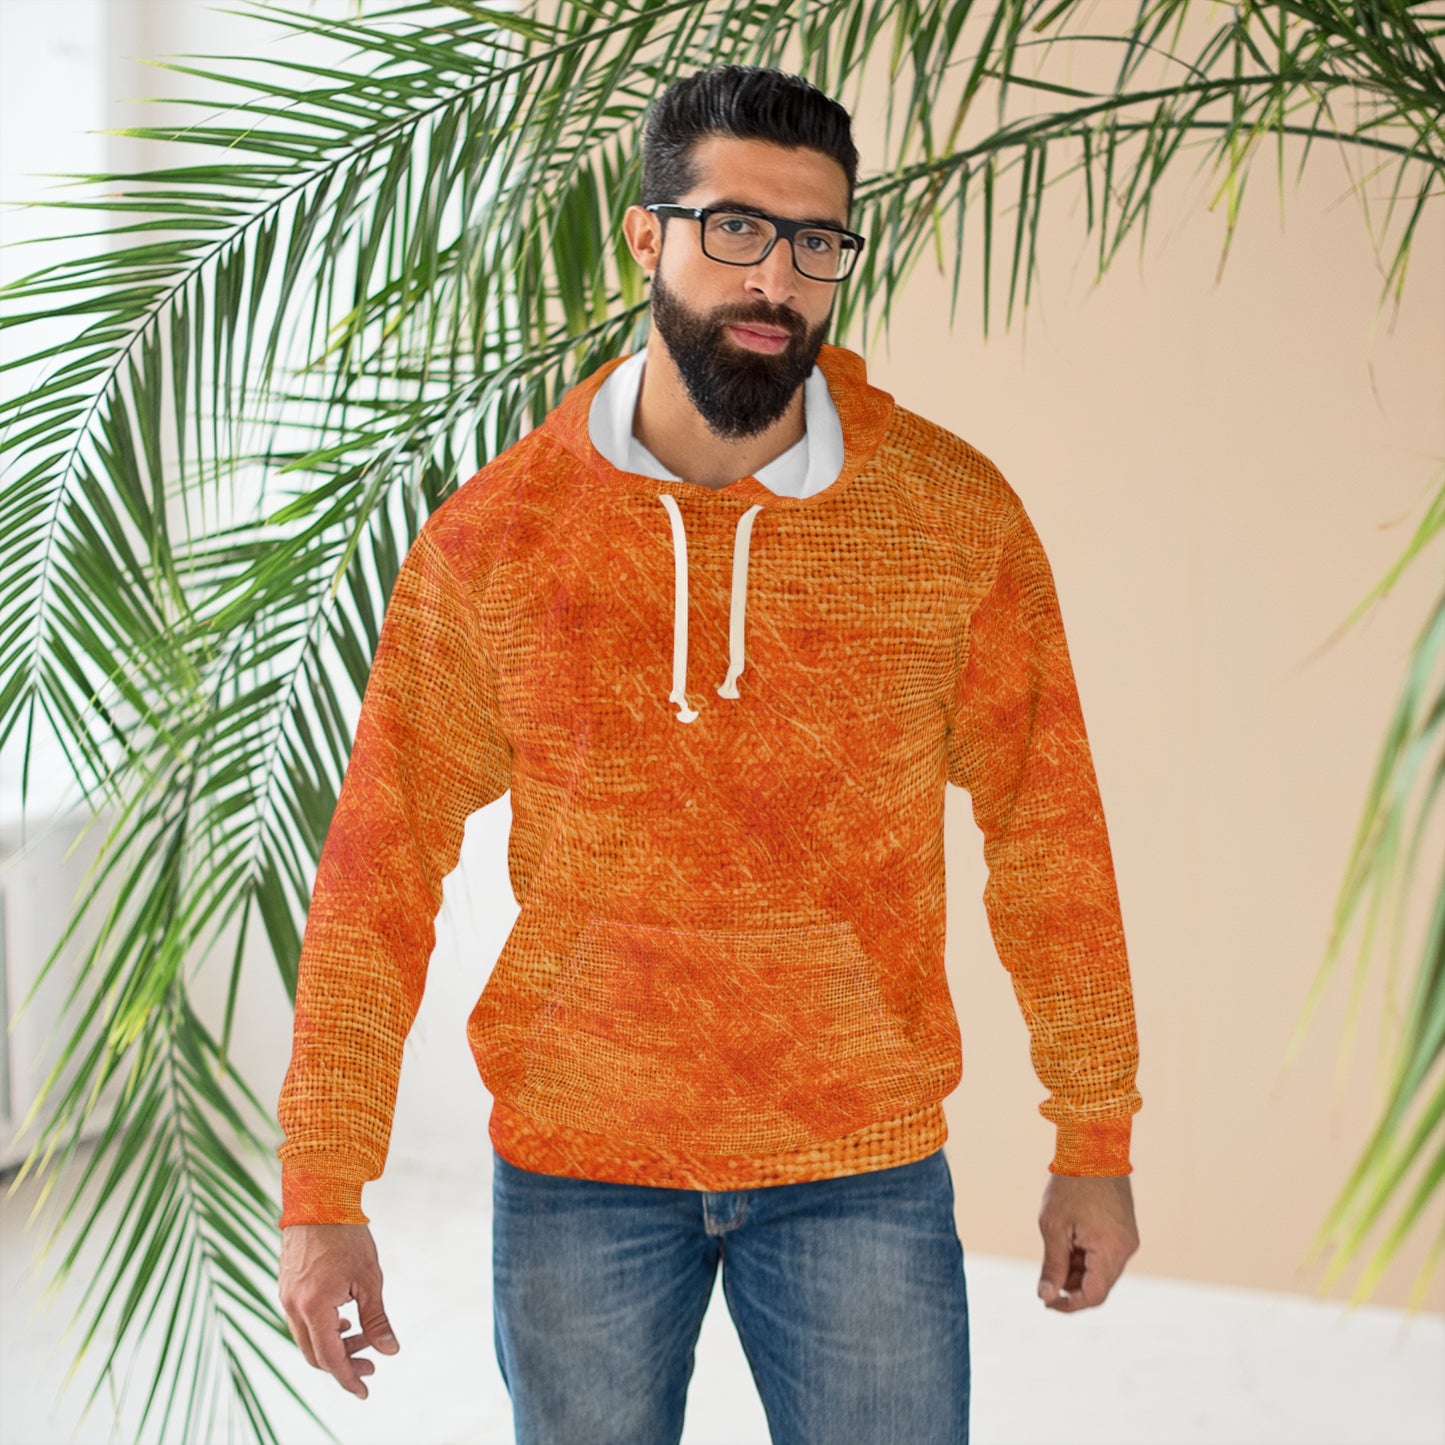 Burnt Orange/Rust: Denim-Inspired Autumn Fall Color Fabric - Unisex Pullover Hoodie (AOP)